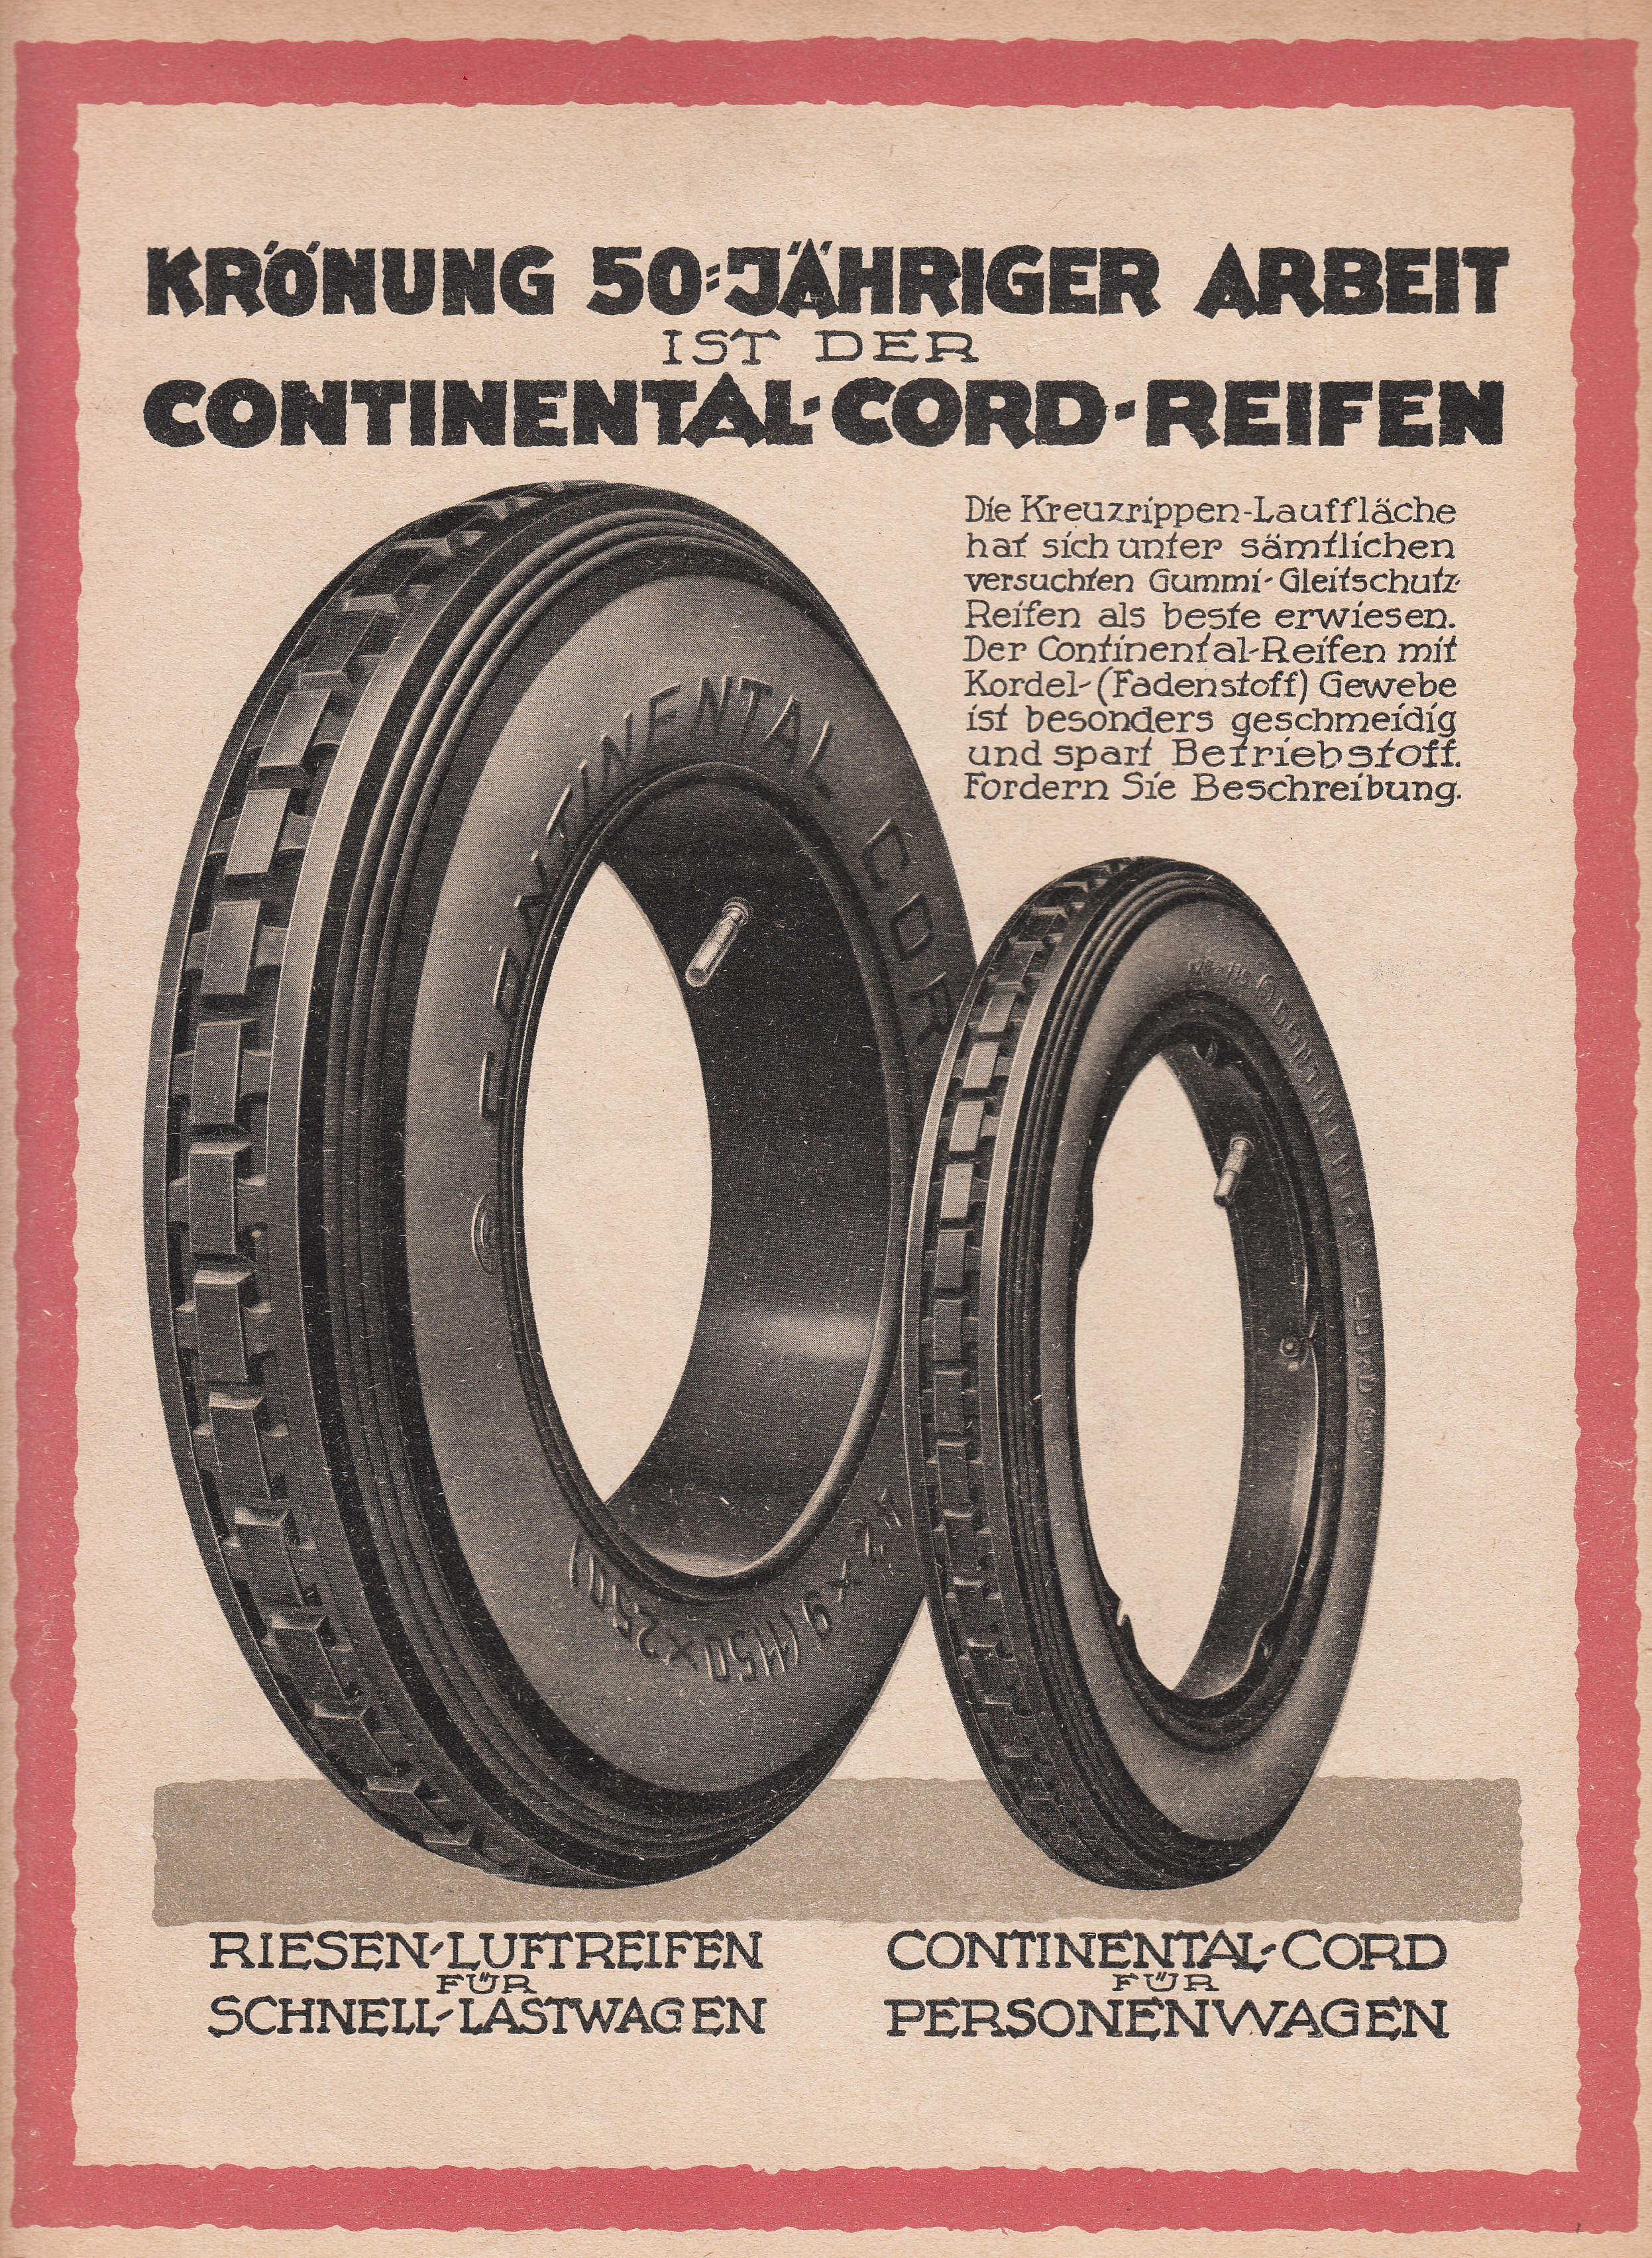 Der Continental-Reifen: Die kontinuierliche Neuerfindung eines  Hightech-Produkts - Continental AG